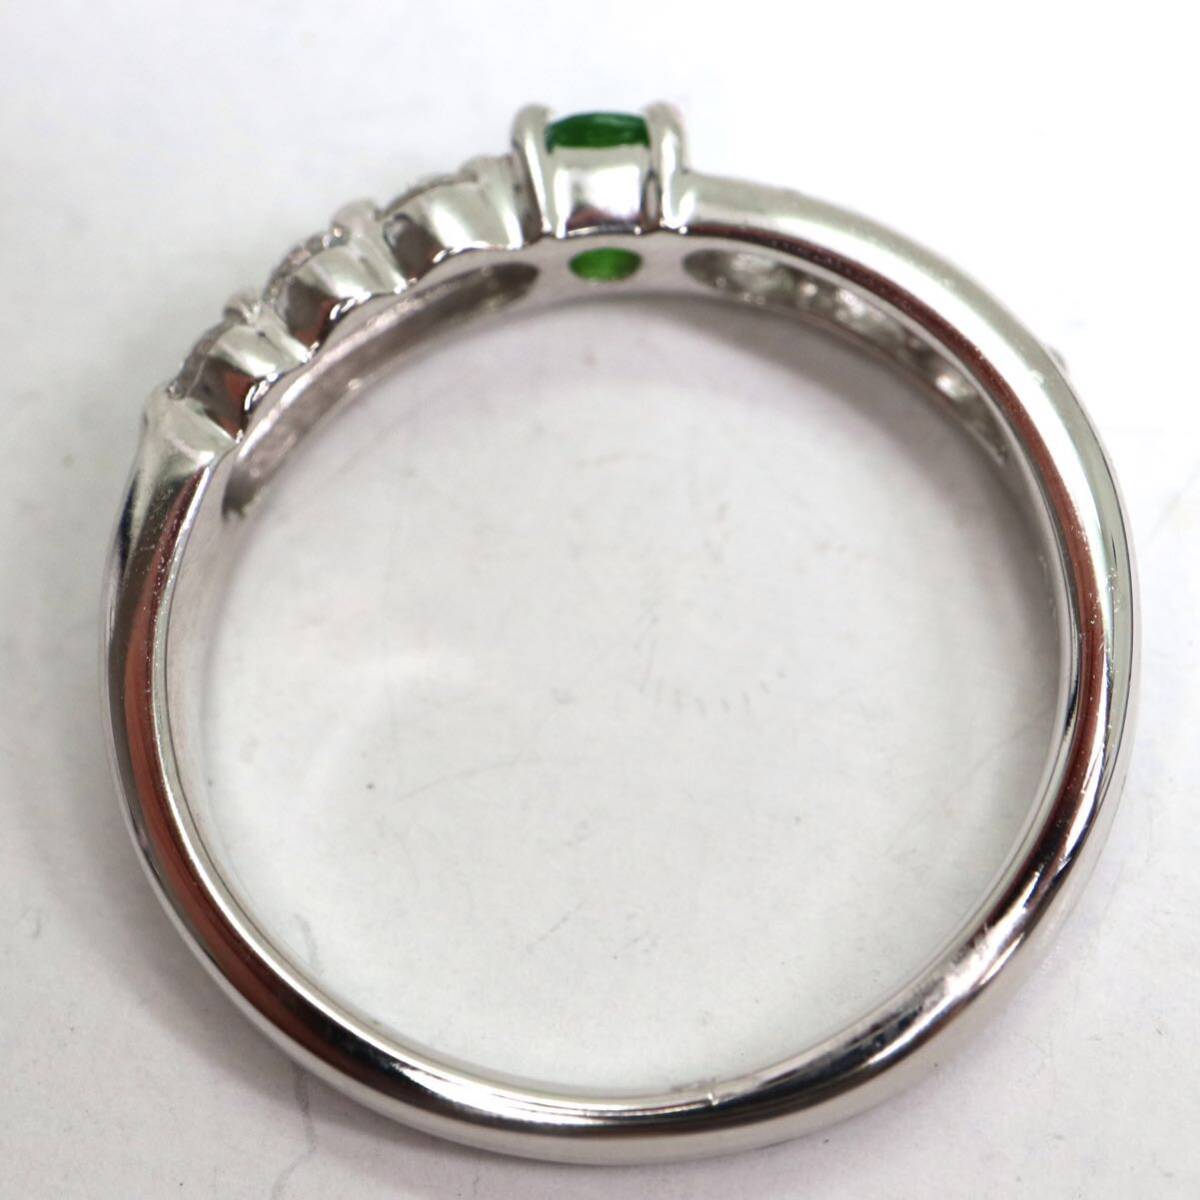 ソーティング付き!!《K18WG 天然デマントイドガーネット/天然ダイヤモンドリング》A 約2.7g 9号 0.14ct diamond ring 指輪 EB5/EC0の画像5